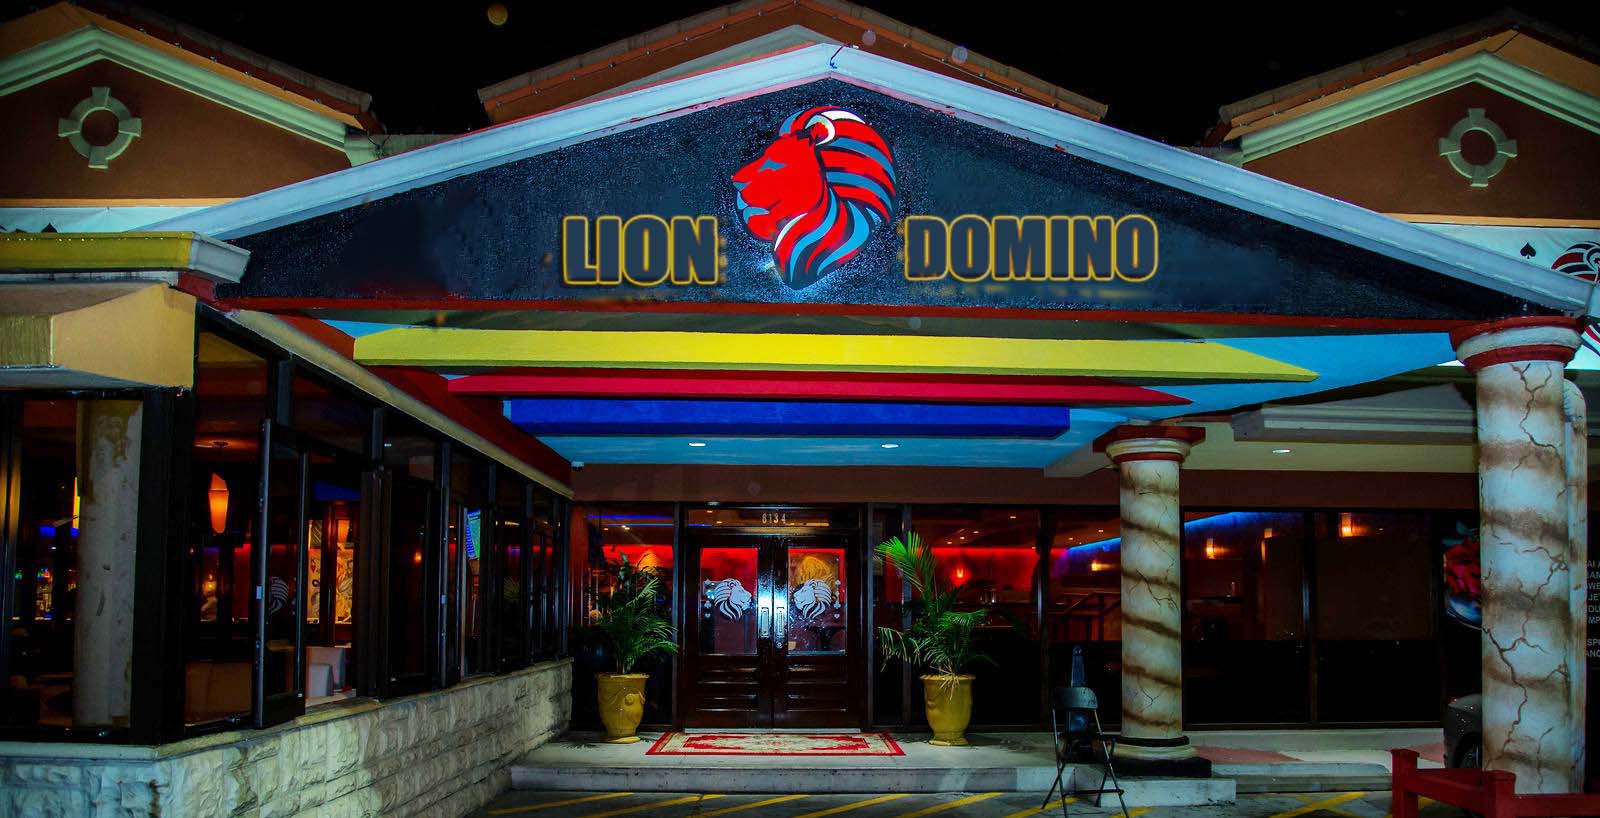 Selamat datang di Rumah Liondomino.com